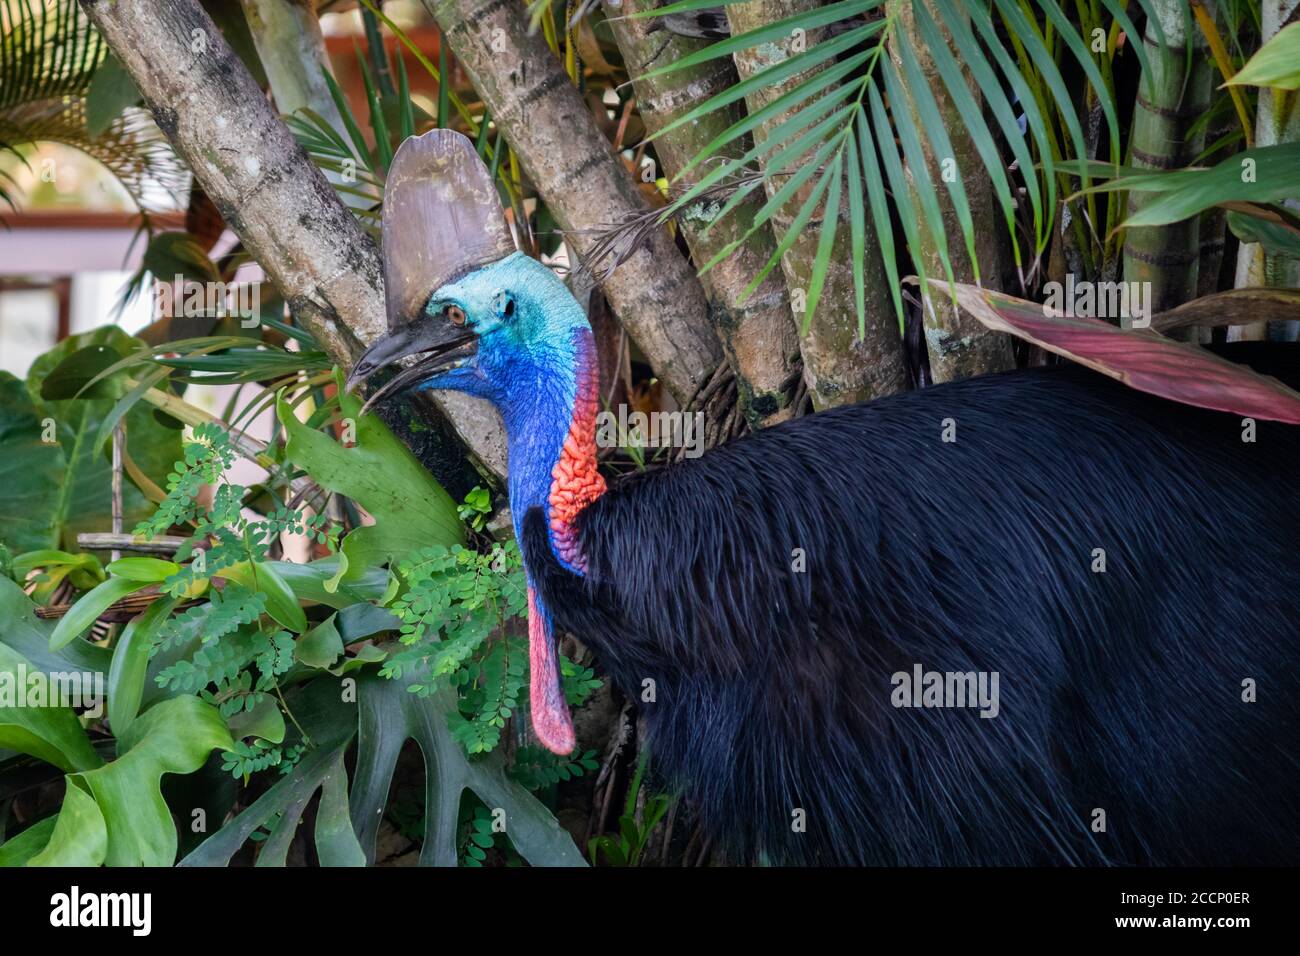 Porträt einer wilden Kasuarie im Dschungel. Erwachsene Einzelperson. Einer der größten und schwersten lebenden Vögel, der gefährlichste Vogel der Welt. Australien Stockfoto